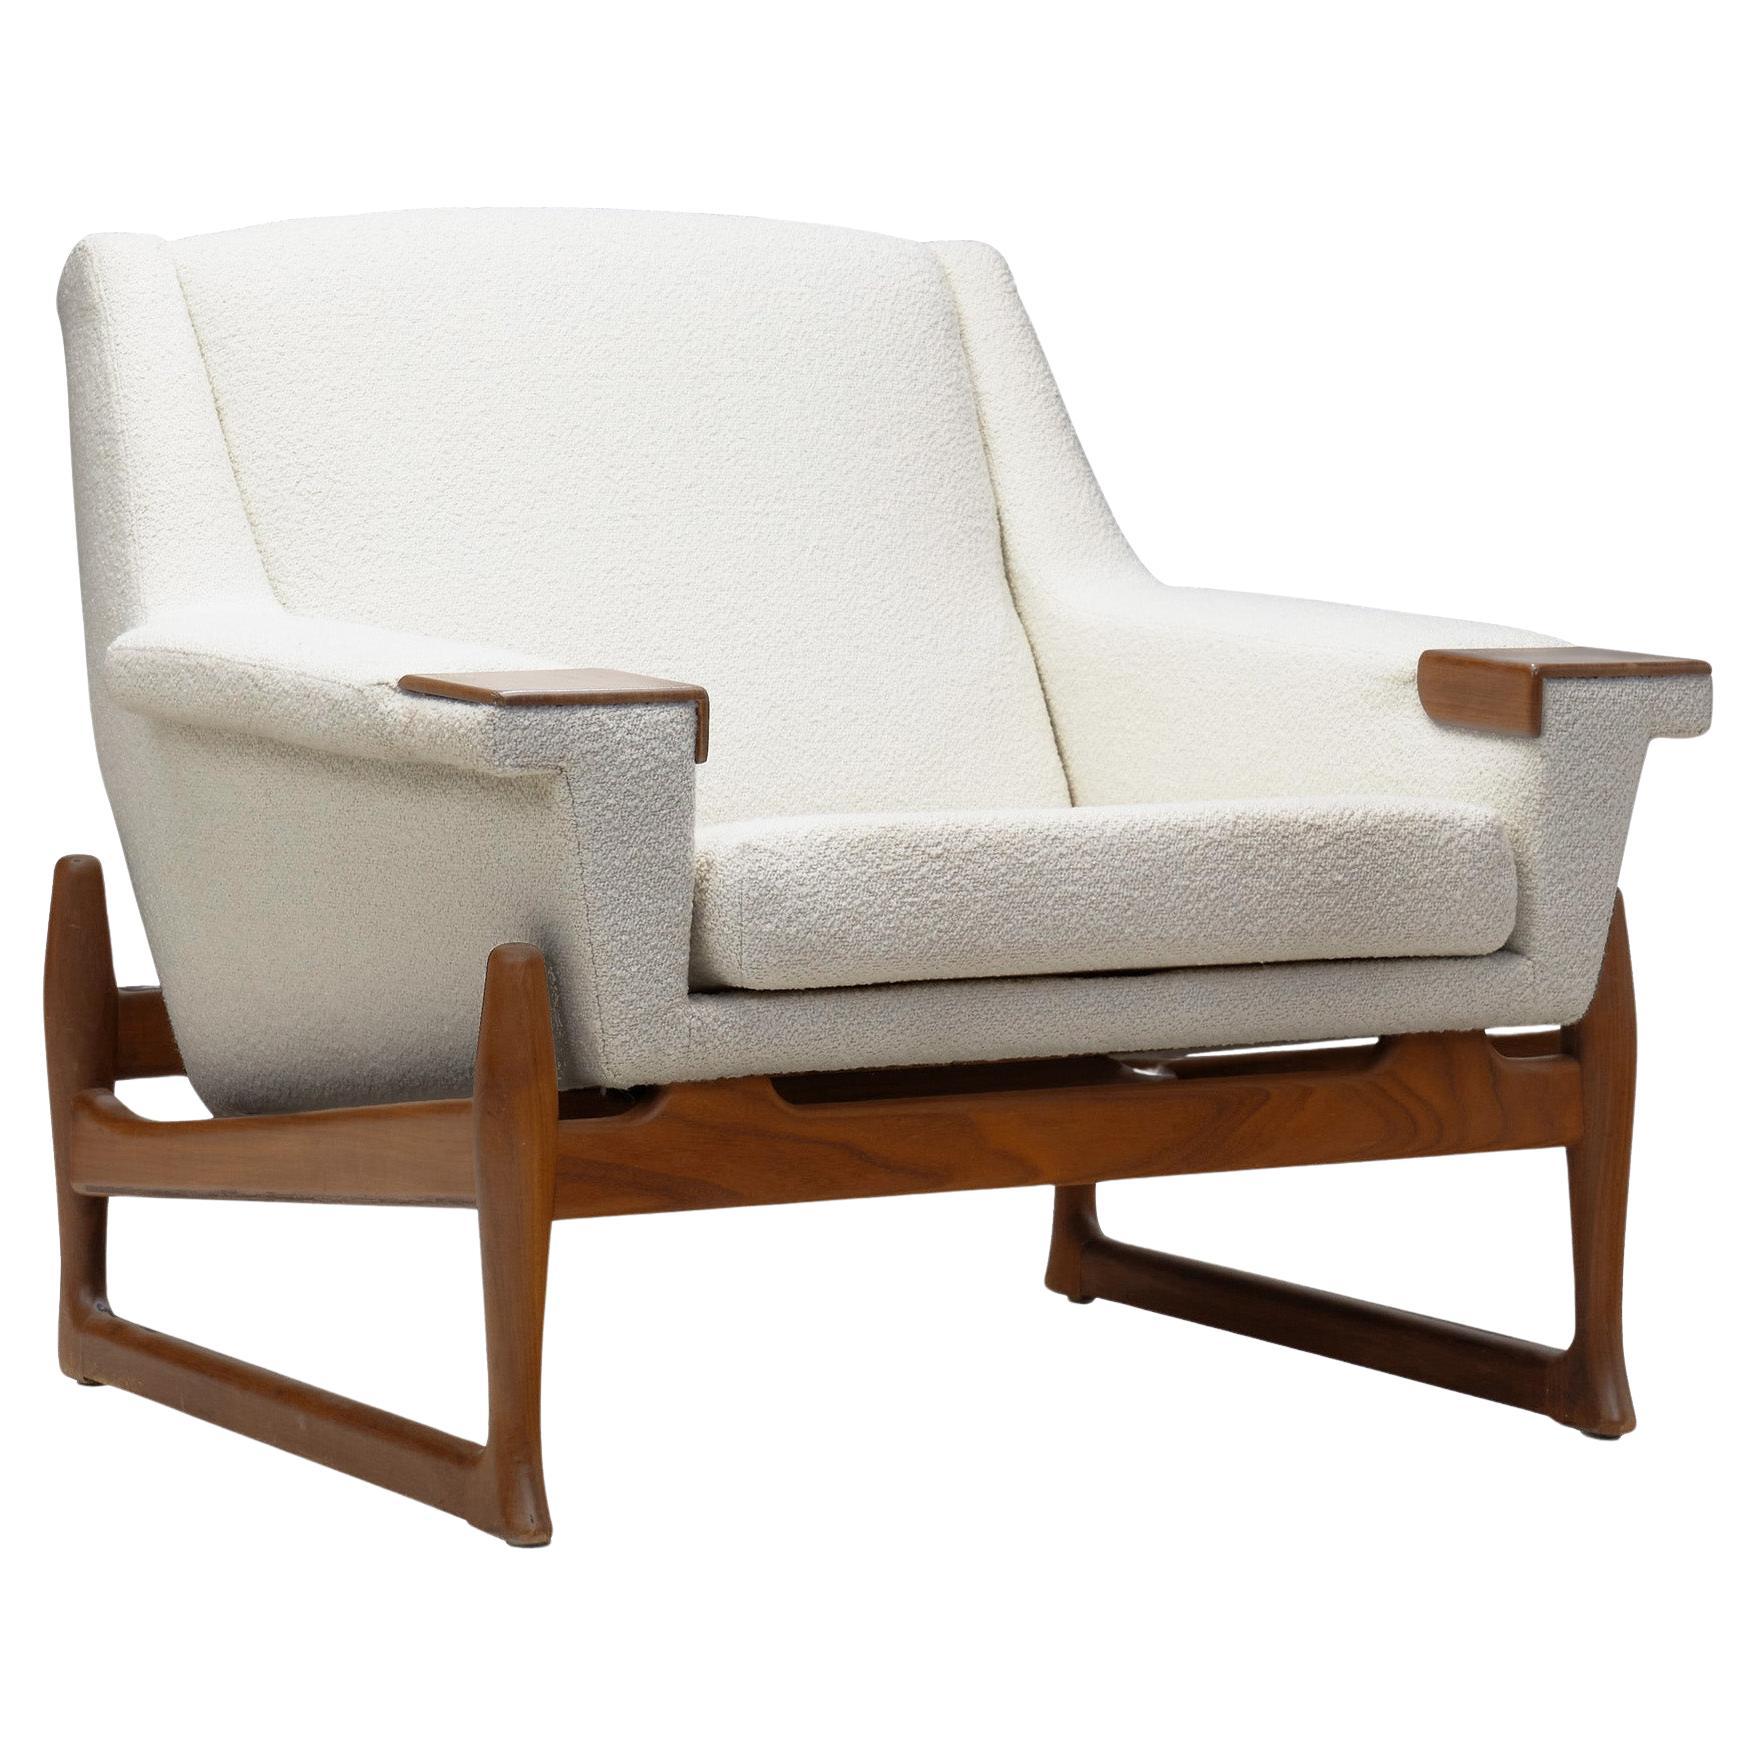 Johannes Andersen "Excellent" Lounge Chair, Sweden 1960s